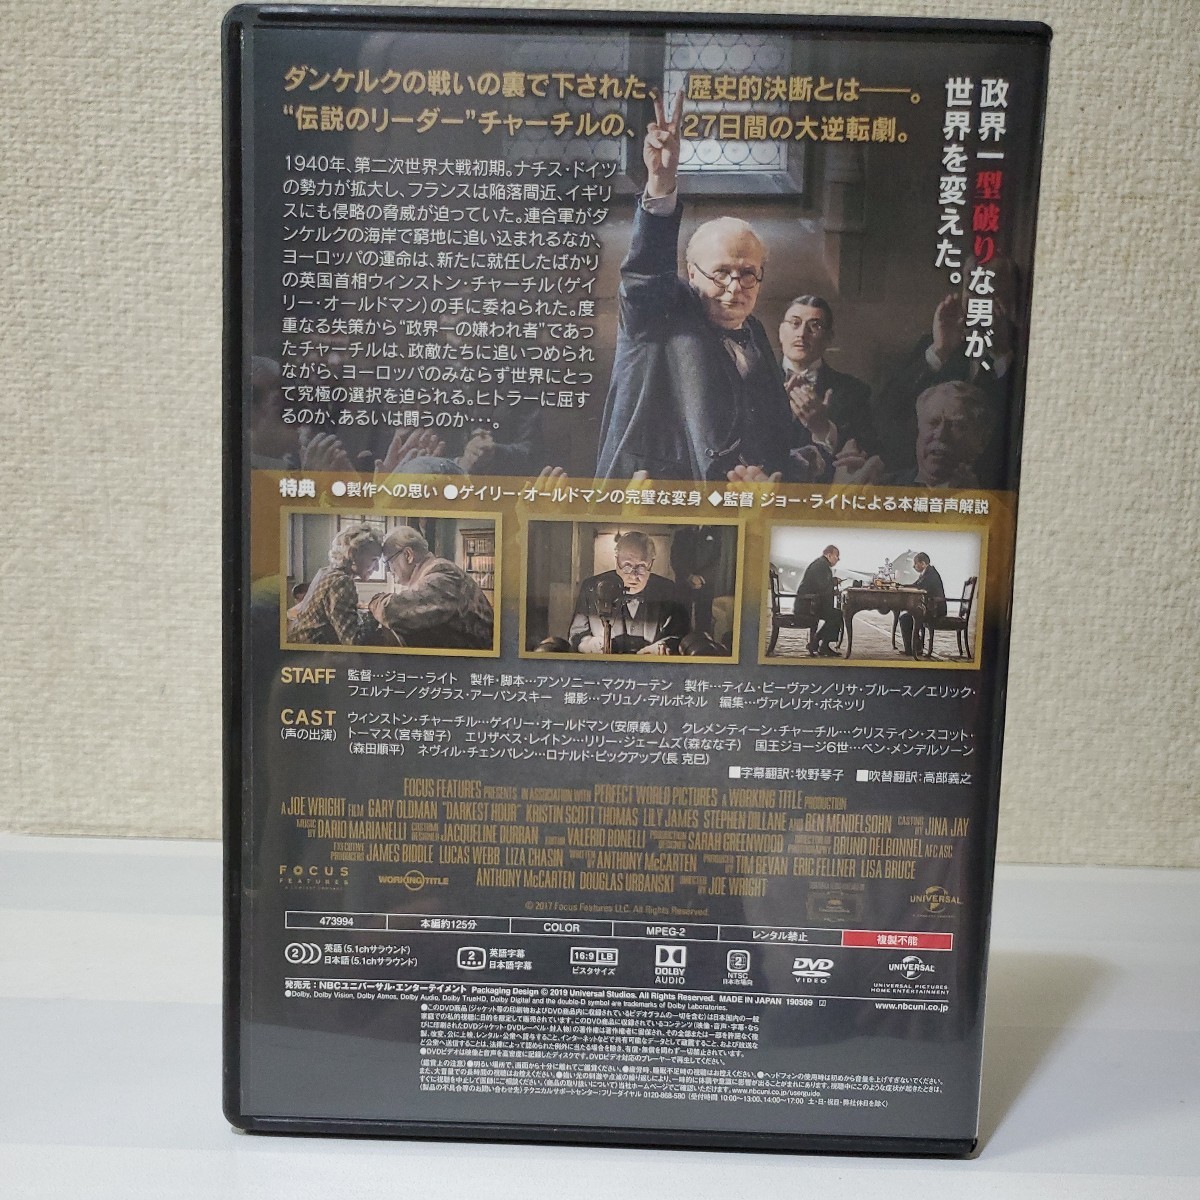 # cell DVD# Winston * Churchill /hi тигр - из мир .... мужчина # постановка Joe * свет # Gary * Old man # японский язык дуть изменение привилегия сбор иметь #